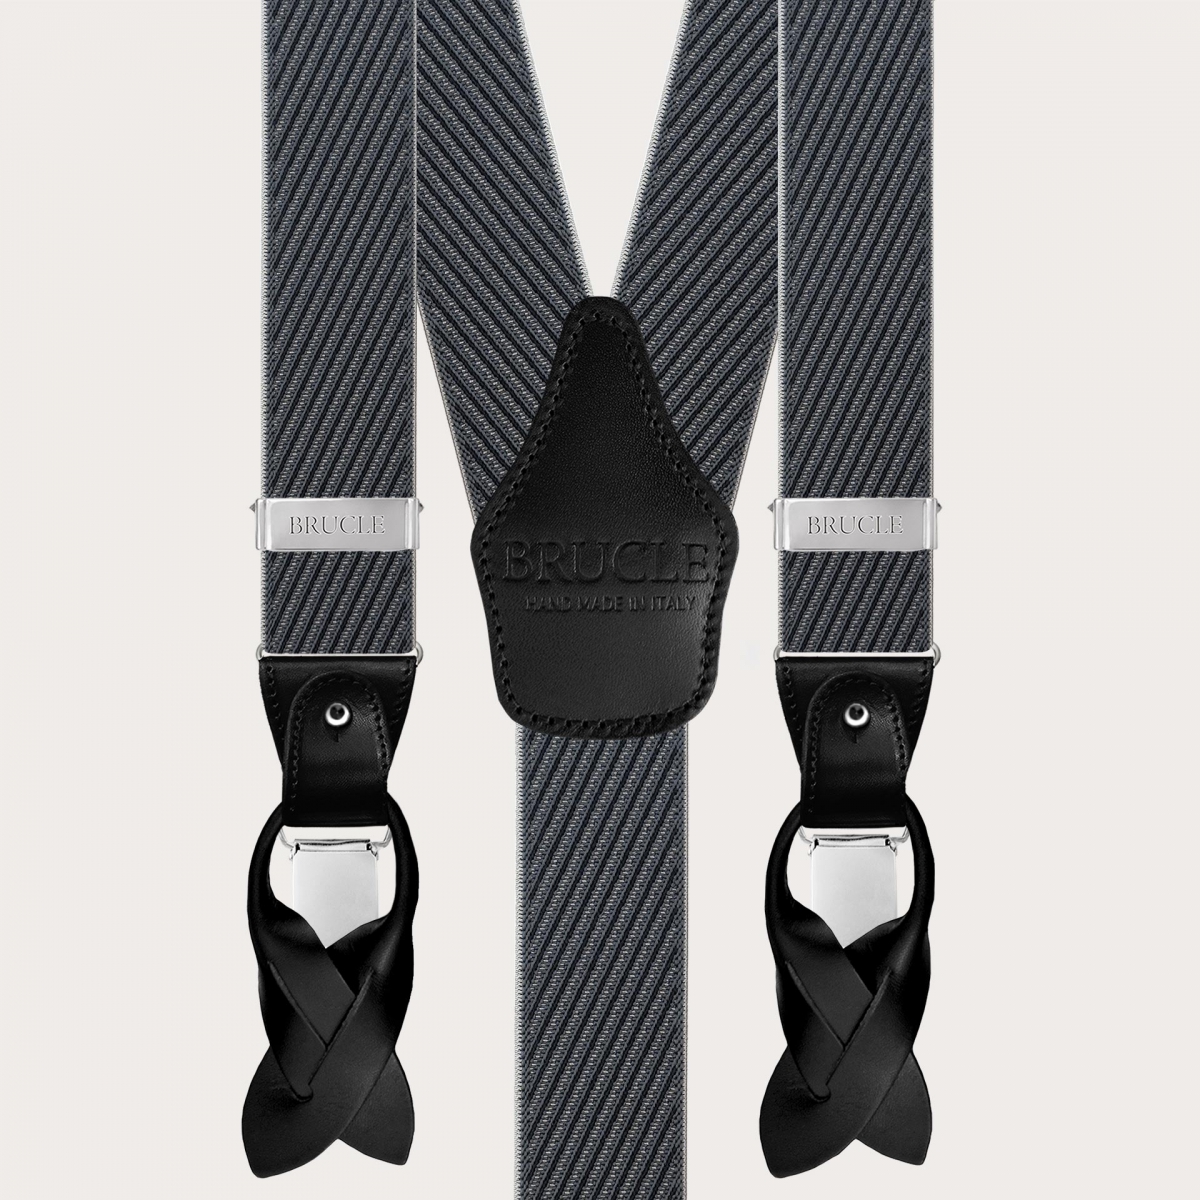 Elegante Herrenhosenträger mit schrägen schwarzen und grauen Streifen, doppelter Einsatz